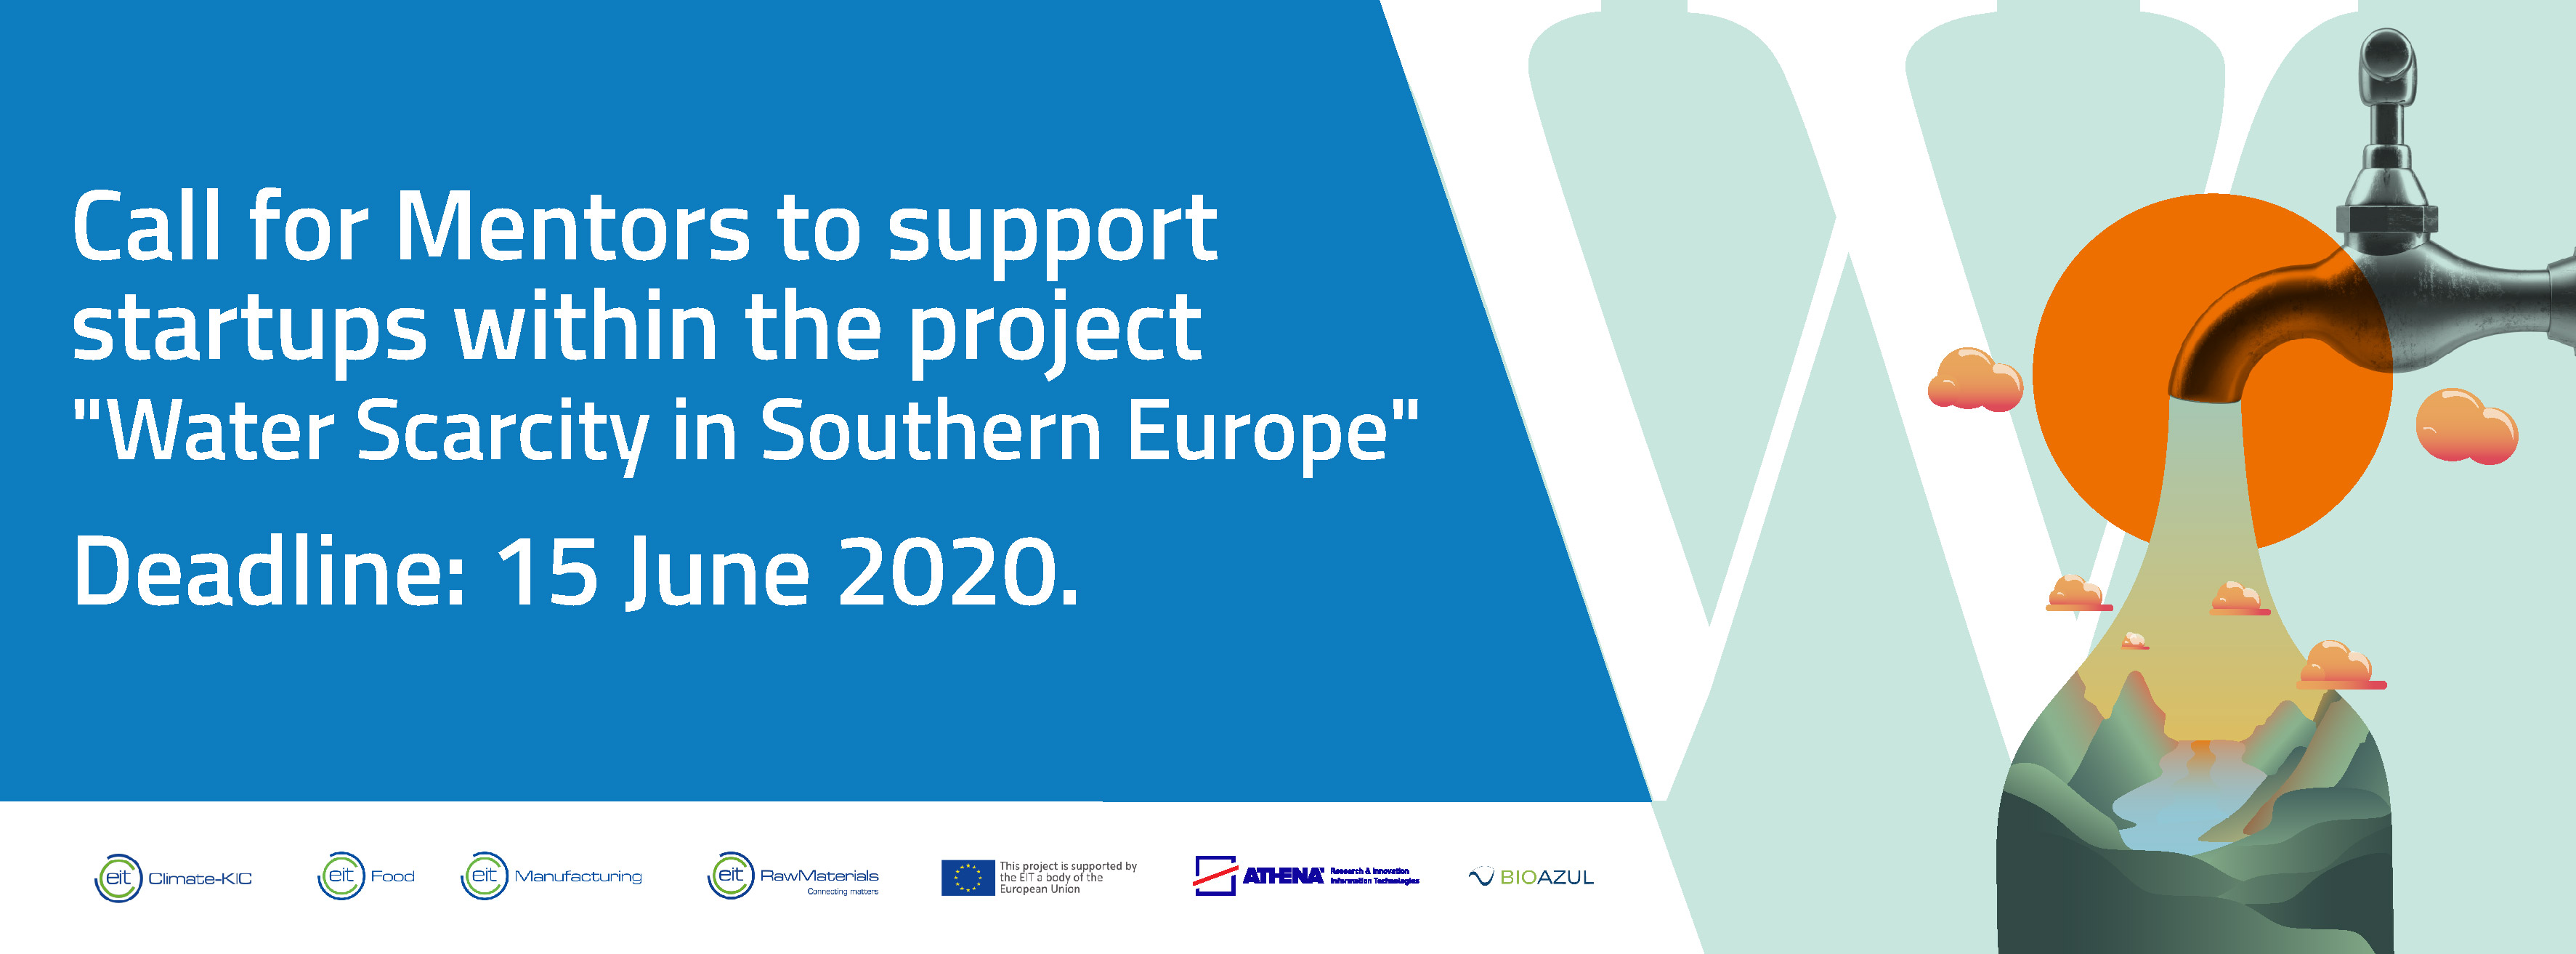 Οι εφαρμογές είναι ανοιχτές για νεοσύστατες επιχειρήσεις που αντιμετωπίζουν το Water Scarcity στη Νότια Ευρώπη!